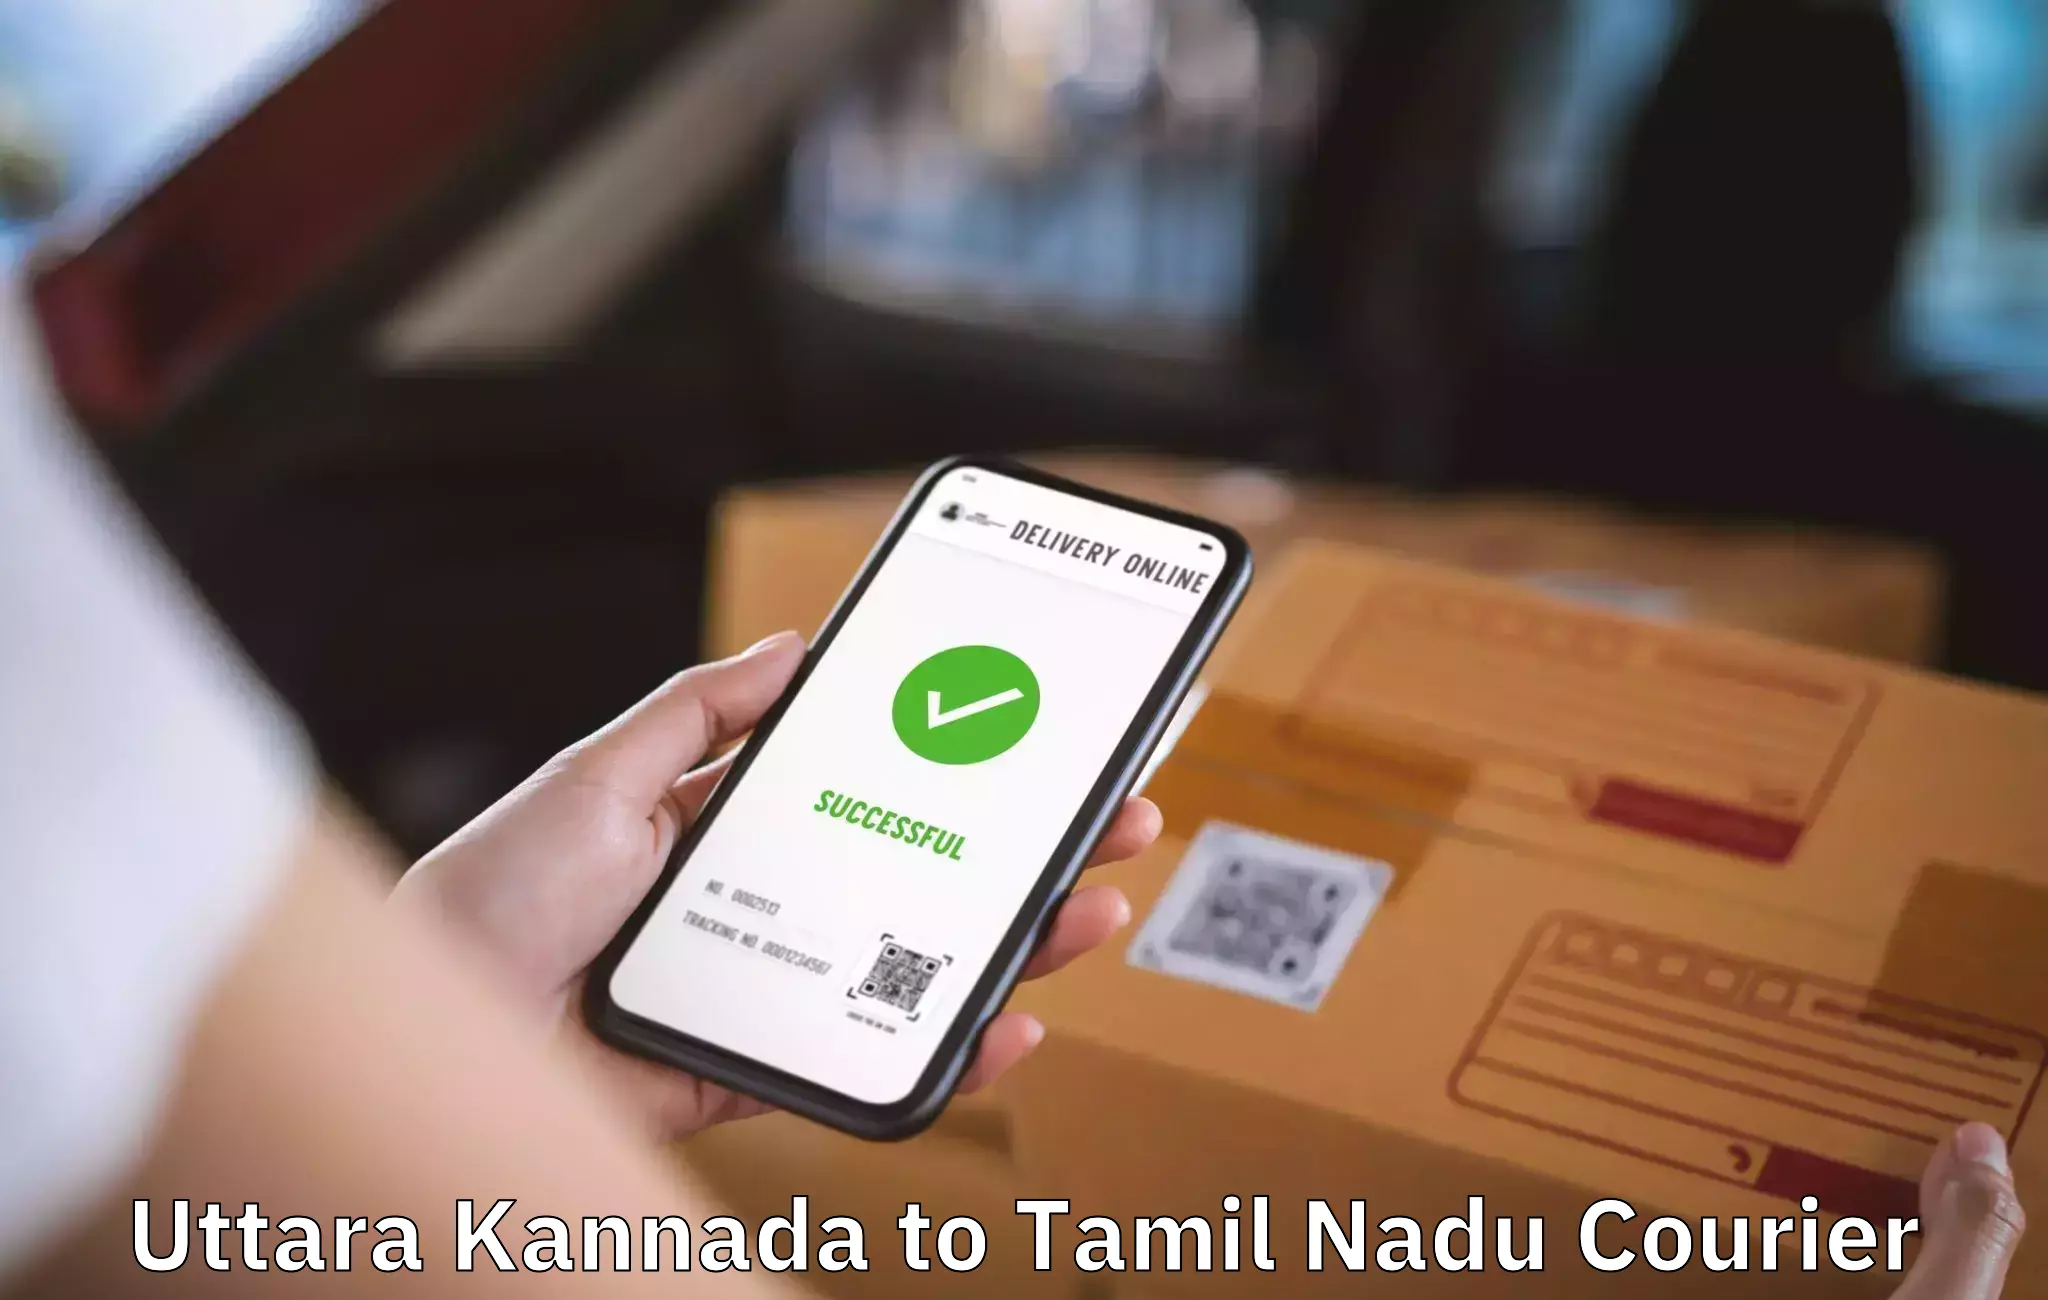 Personalized moving service Uttara Kannada to Manamelkudi